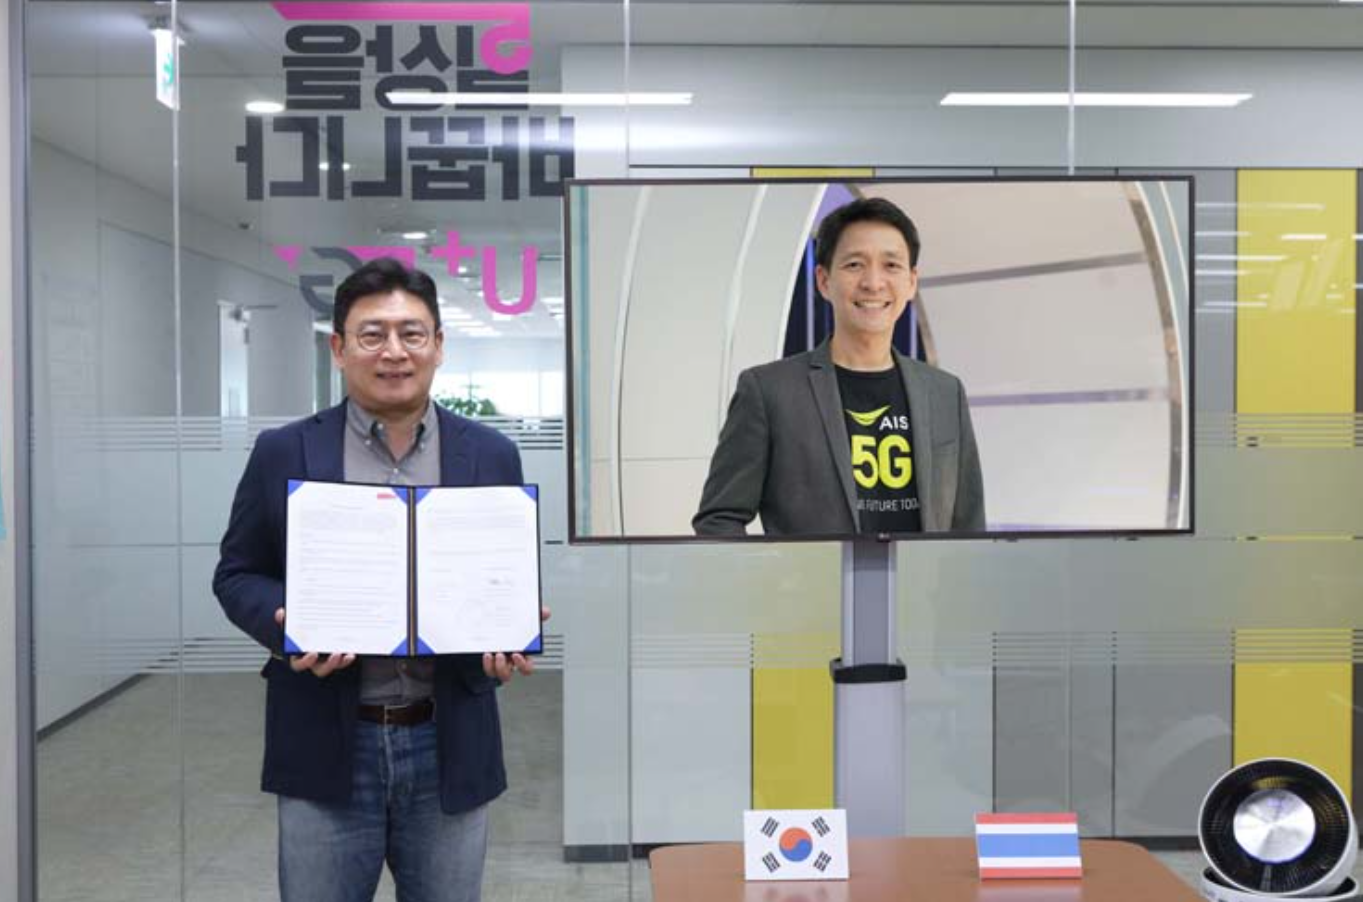 สื่อเกาหลีใต้ รายงาน LGU+ ผู้ให้บริการ 5G ดีลคอนเทนต์ดาราเกาหลีร่วมกับ AIS มูลค่า 11.14 ล้านดอลลาร์สำเร็จ รับชมผ่าน 5G Play VR 